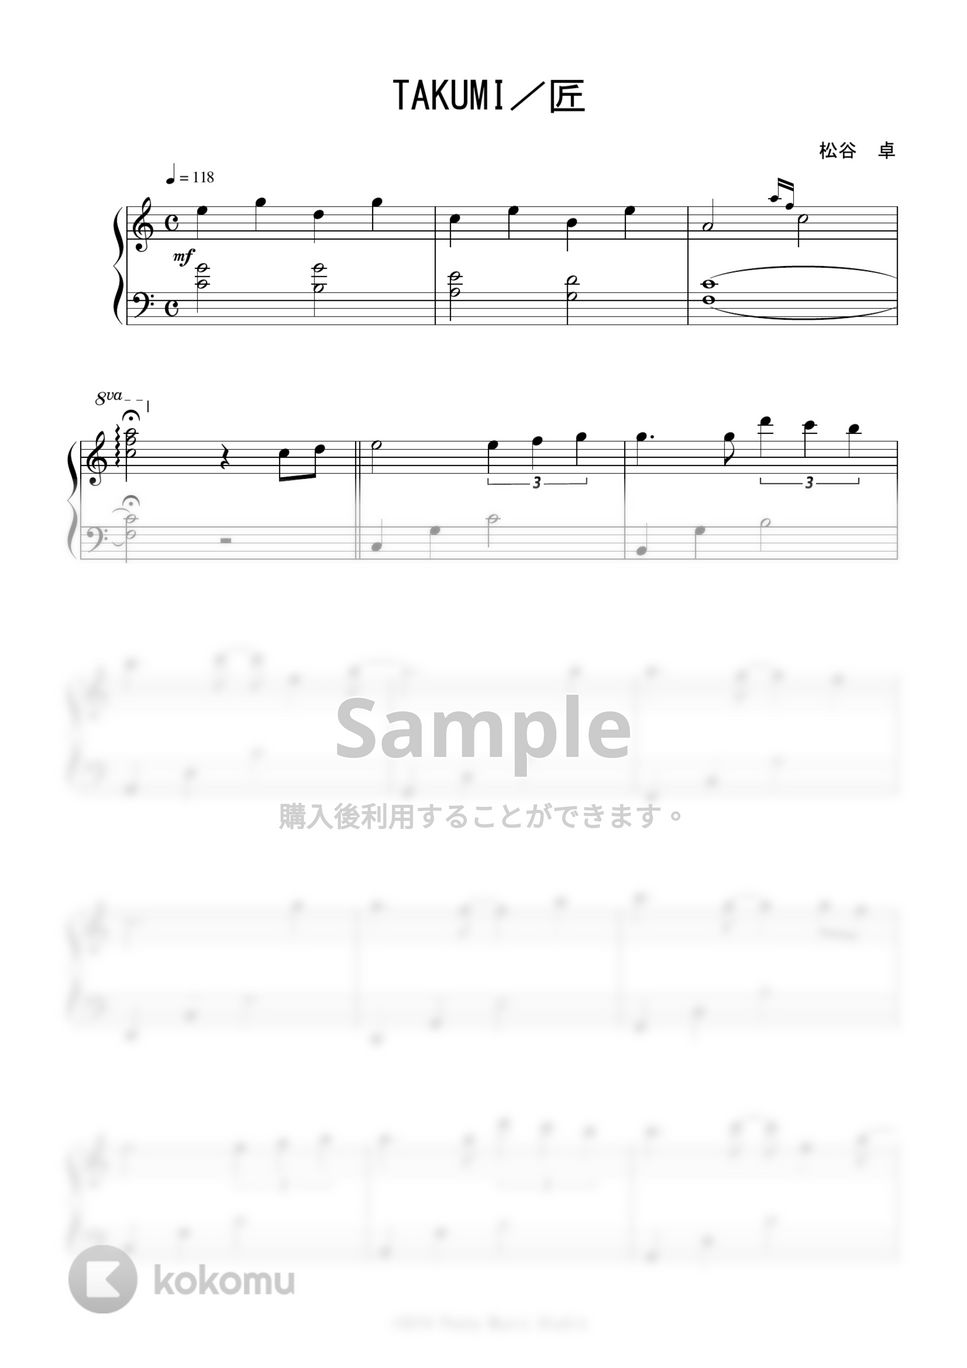 松谷 卓 - TAKUMI/匠 (「大改造! 劇的ビフォーアフター」OST / Short Ver.) by Peony